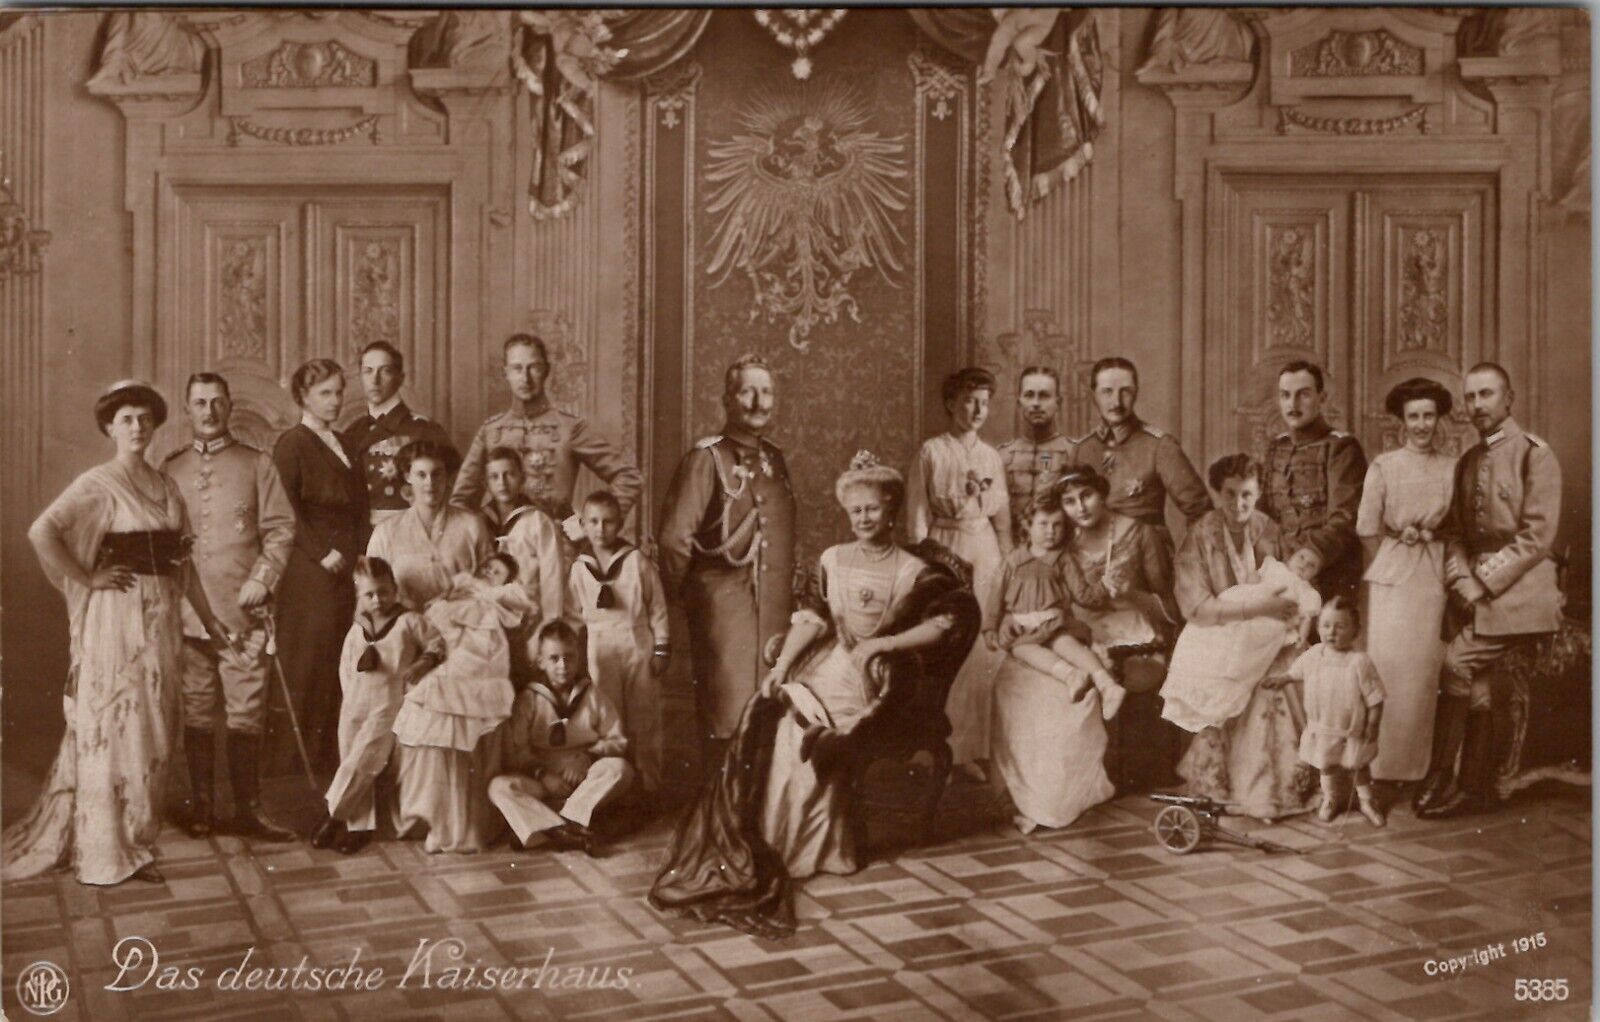 RPPC The German Imperial House, Das deutsche Kaiserhaus 1915 Royalty Postcard X1